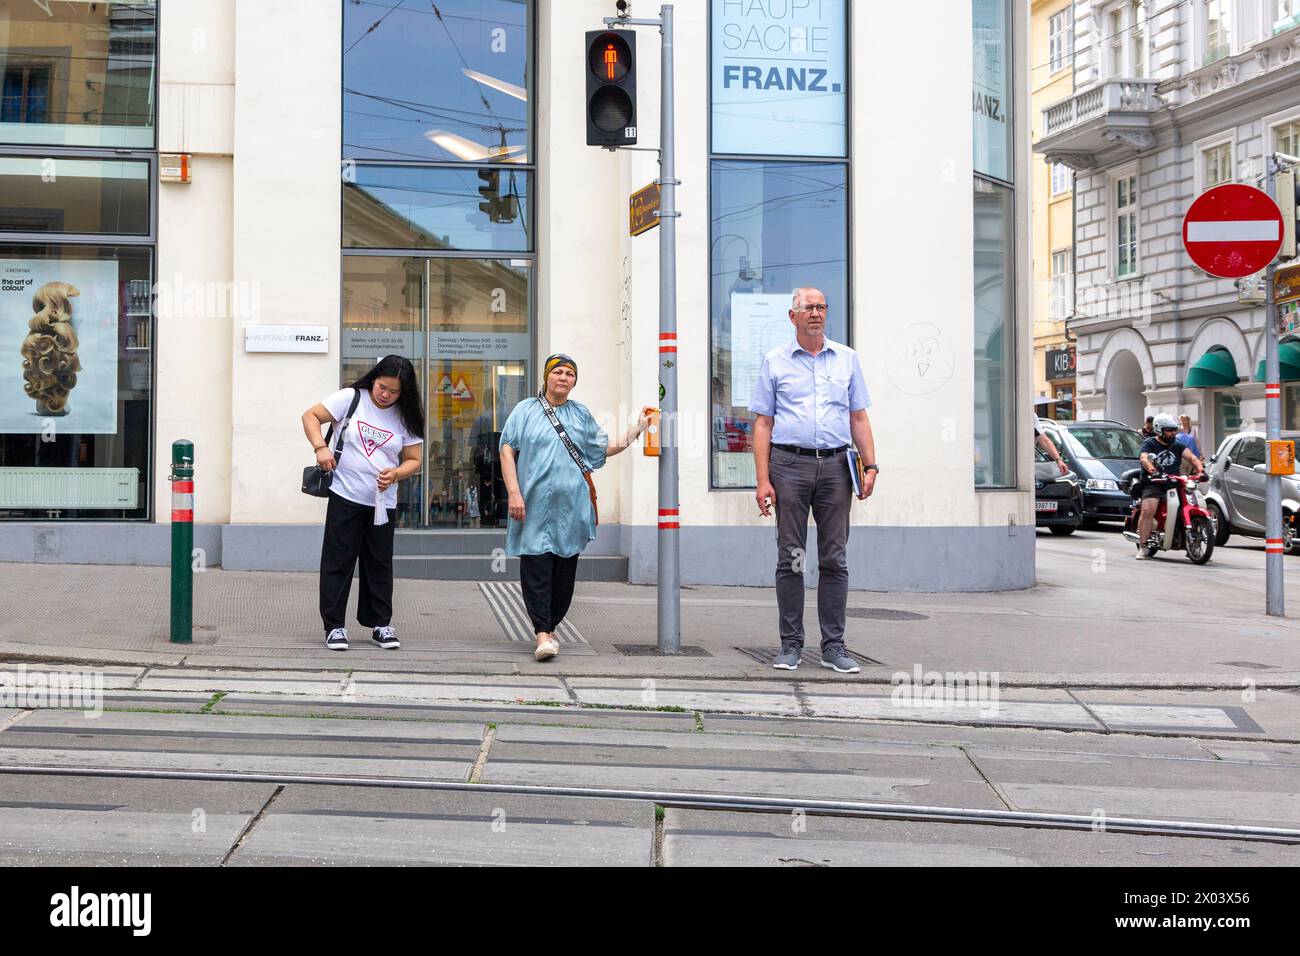 Vienne, Autriche - 21 juin 2023 : les gens à un passage piétonnier attendent un feu vert Banque D'Images